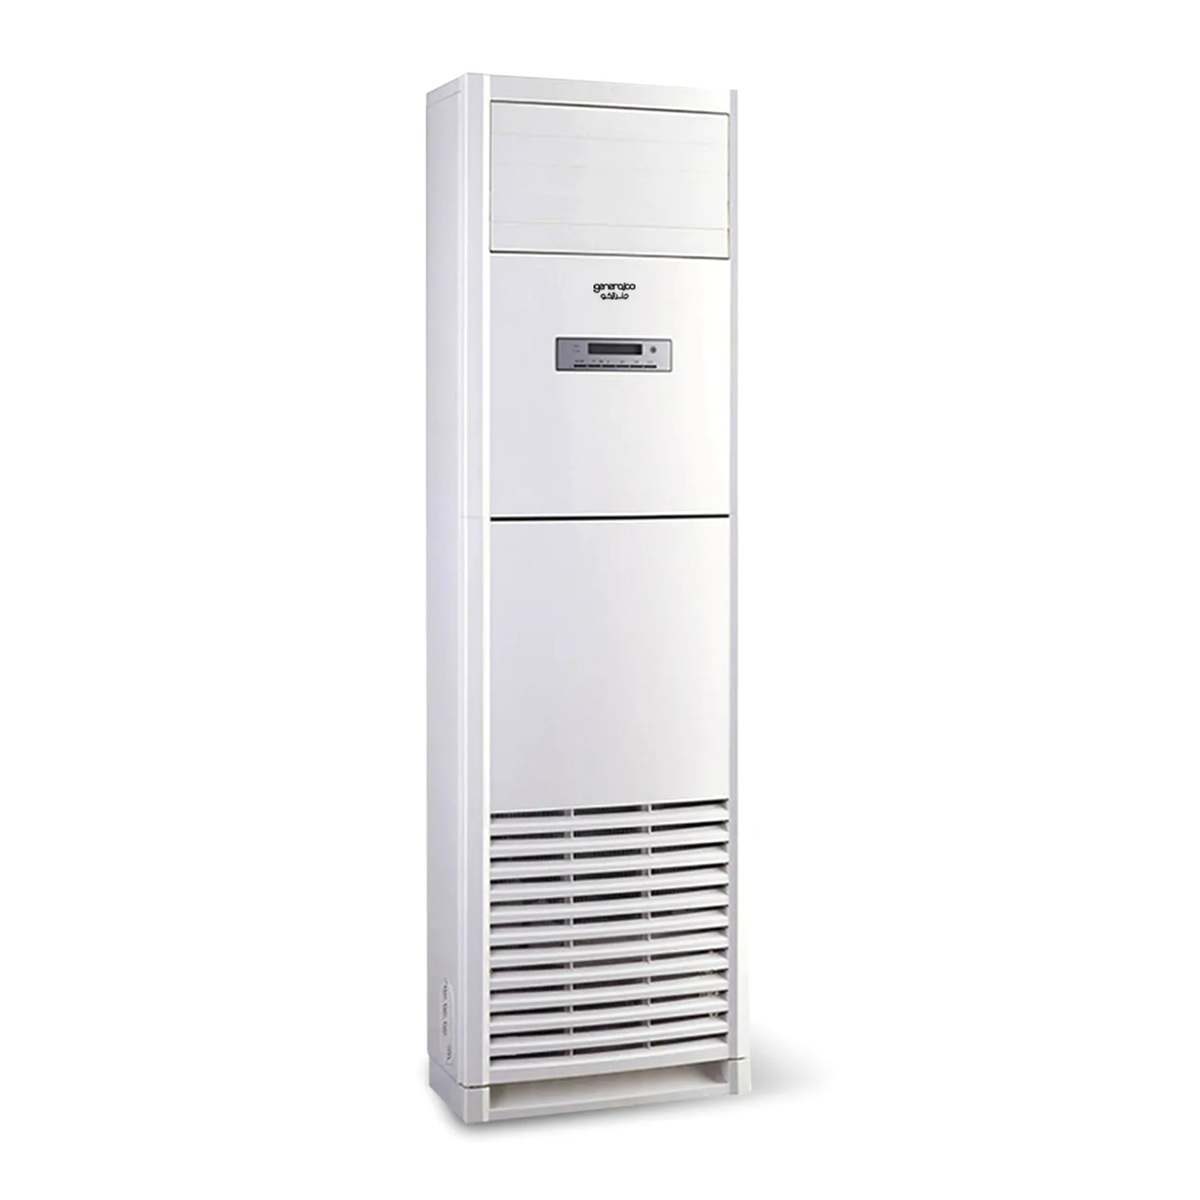 Generalco Floor Standing Air Conditioner, 3 Ton, AFTGA-36CR